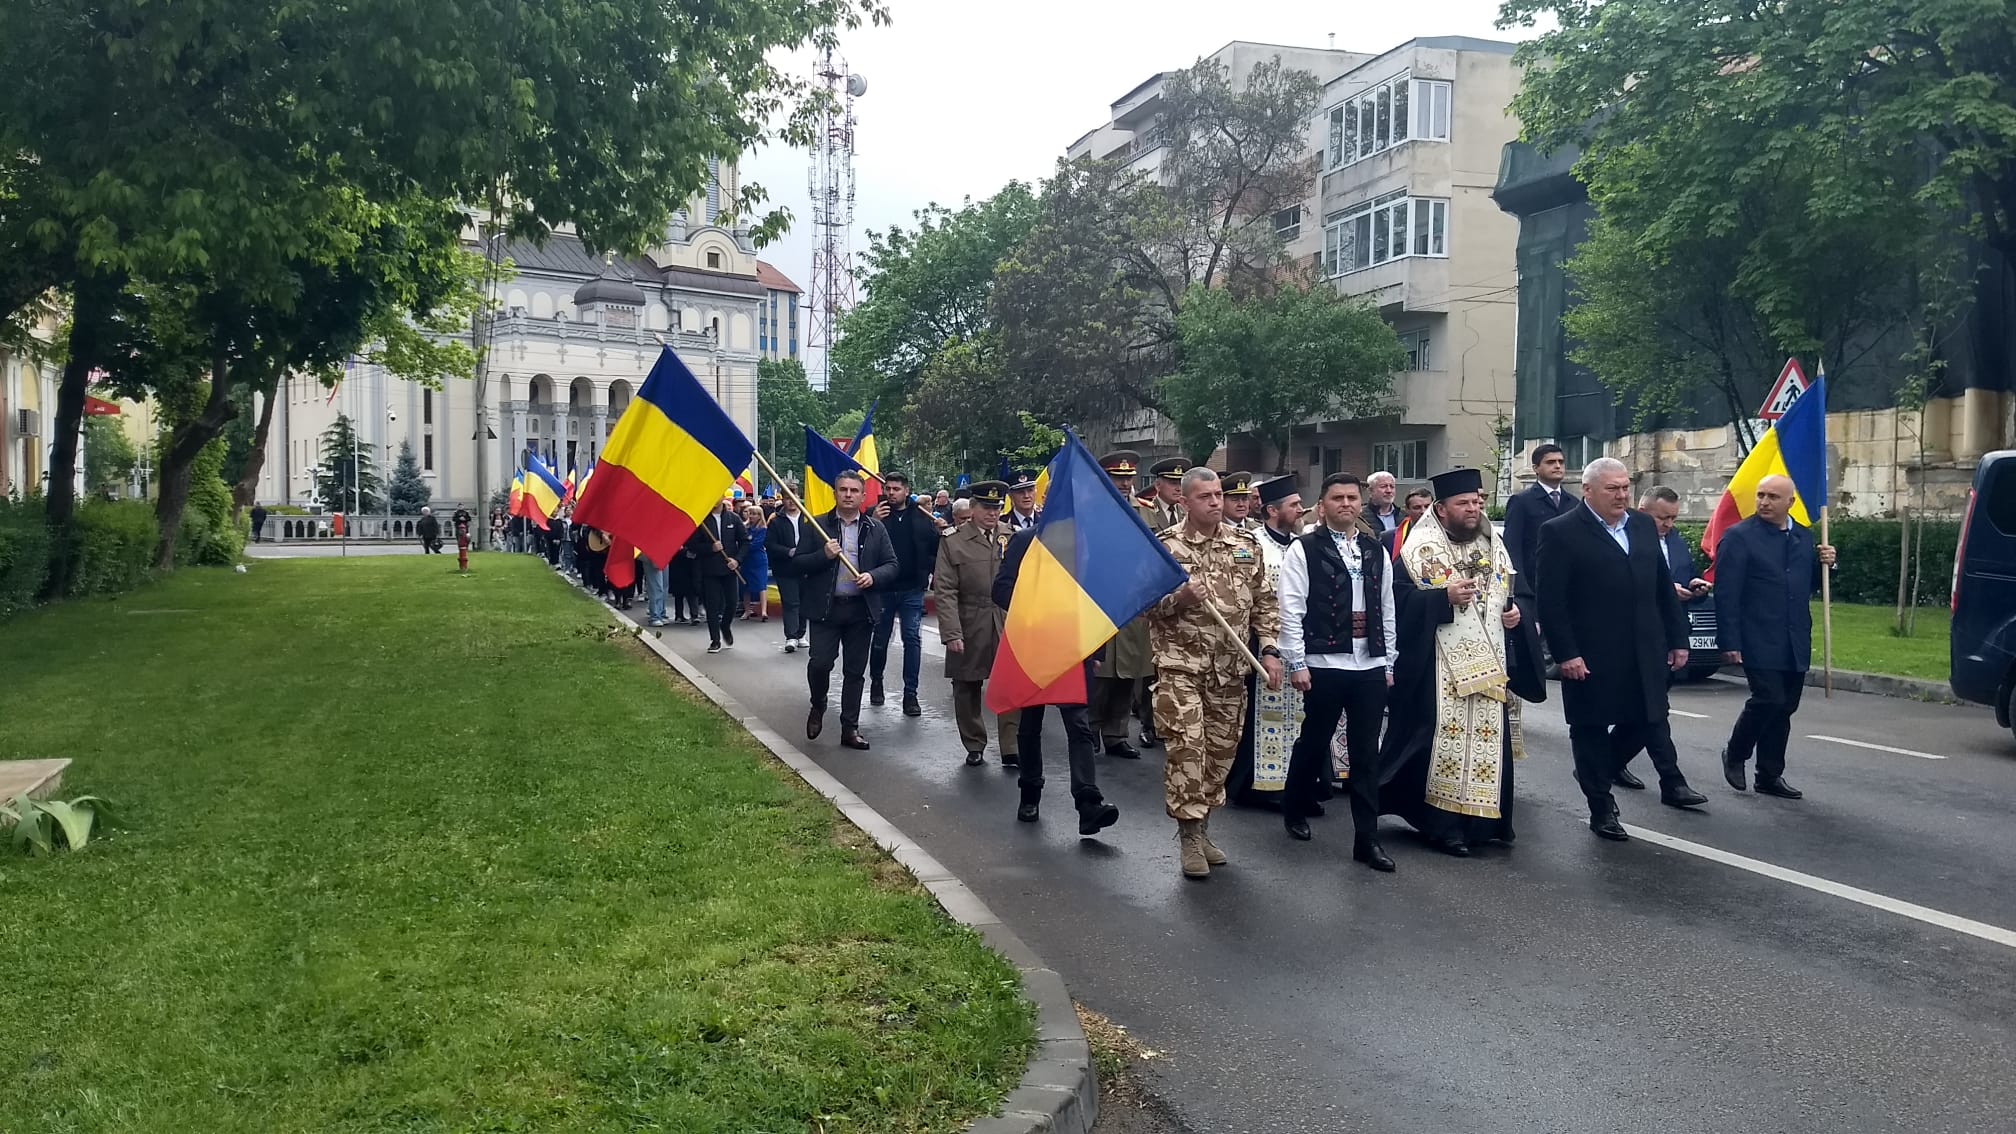 Azi se marchează  105 ani de la intrarea  armatei române  în Satu Mare